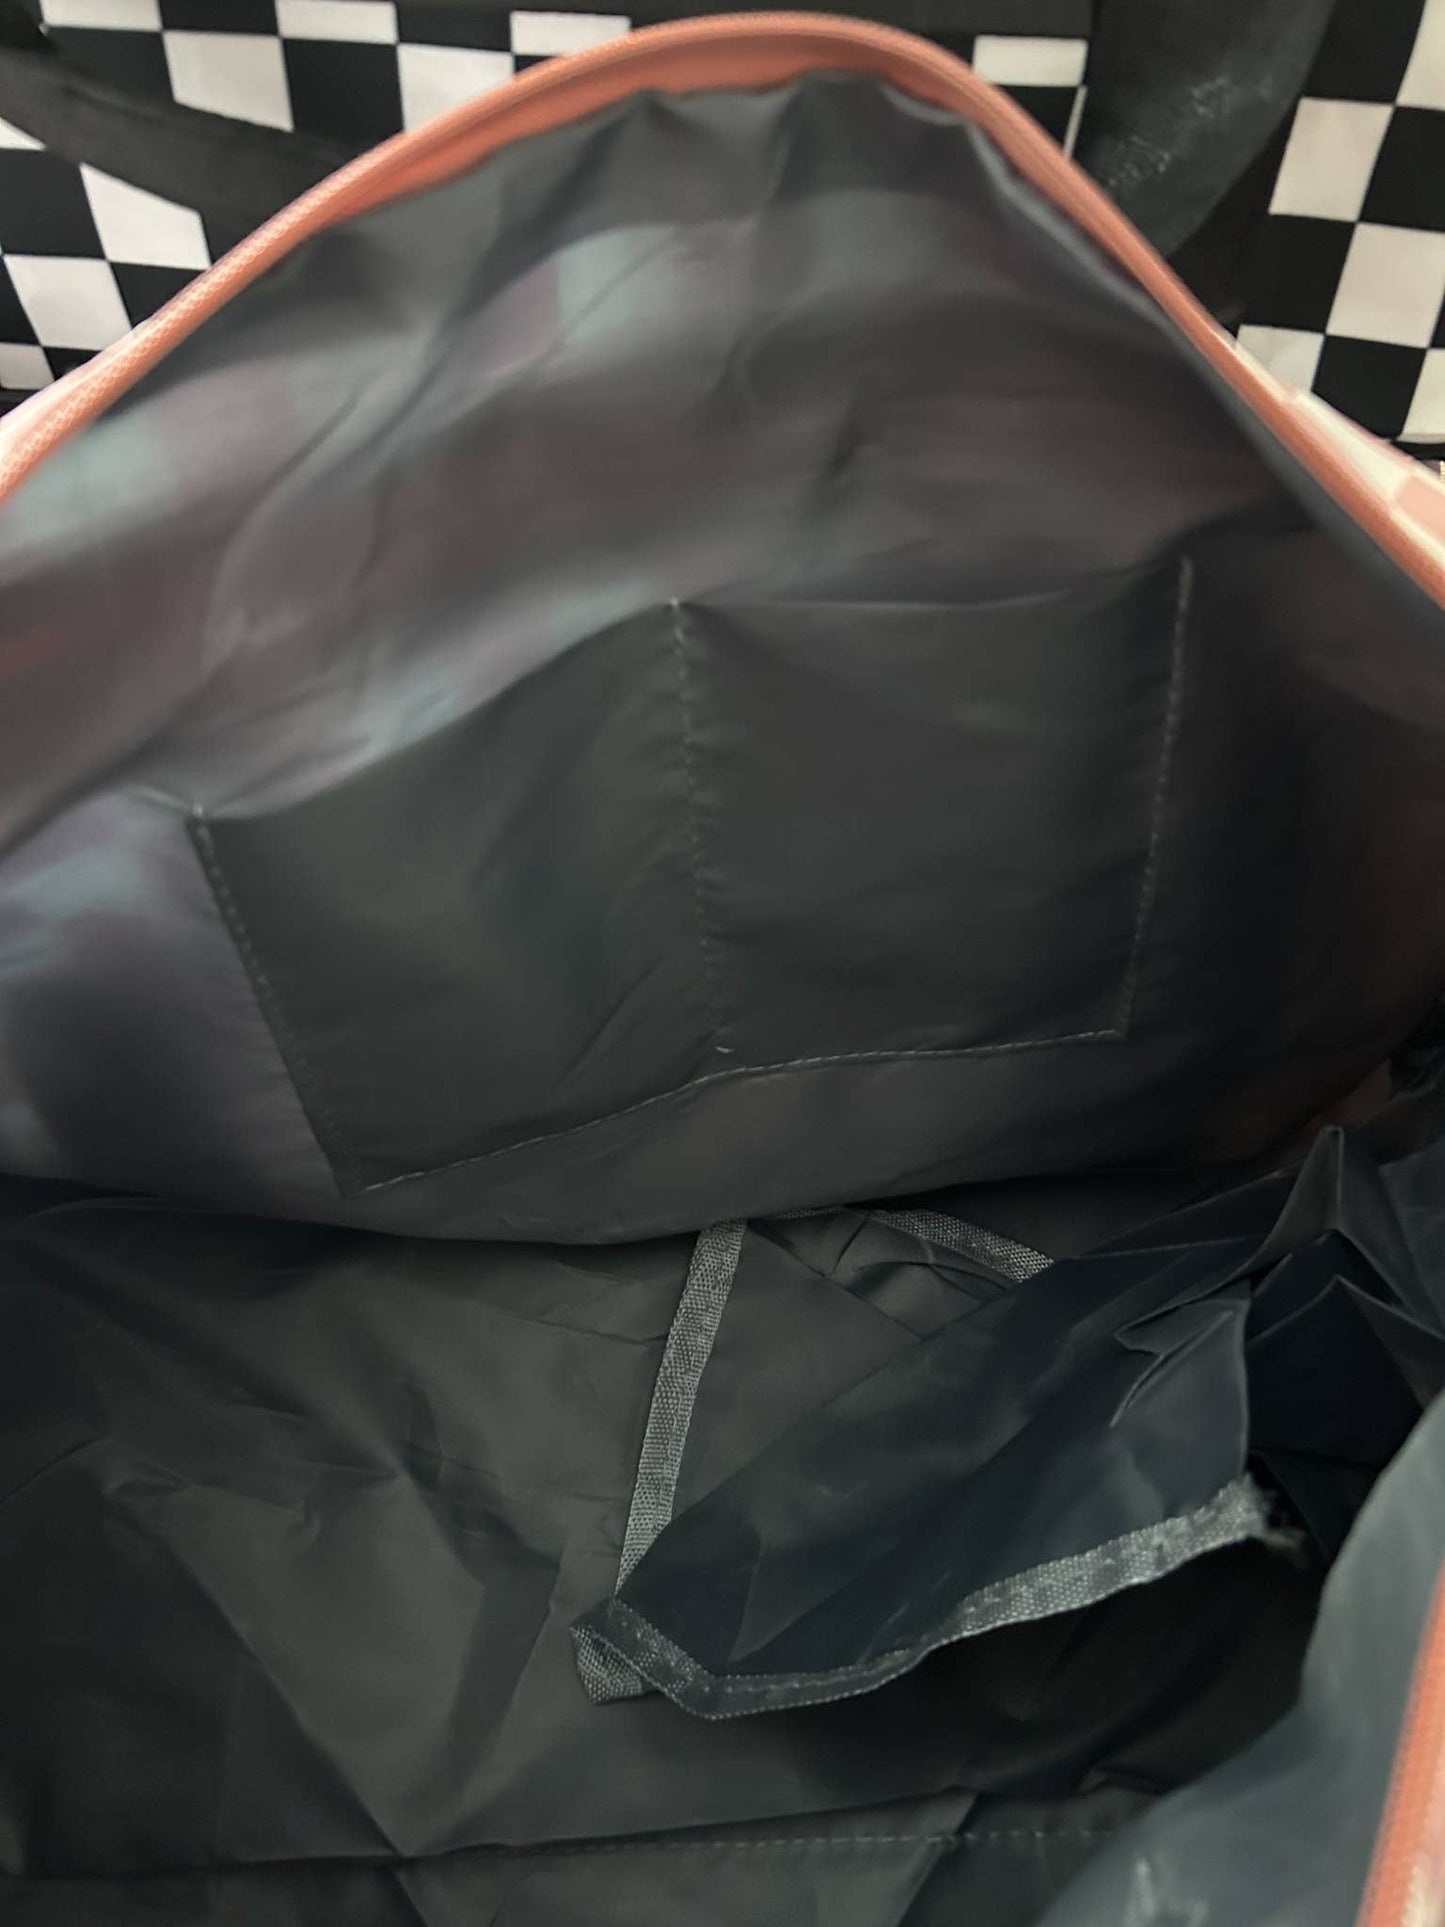 Checkered Duffel Bags